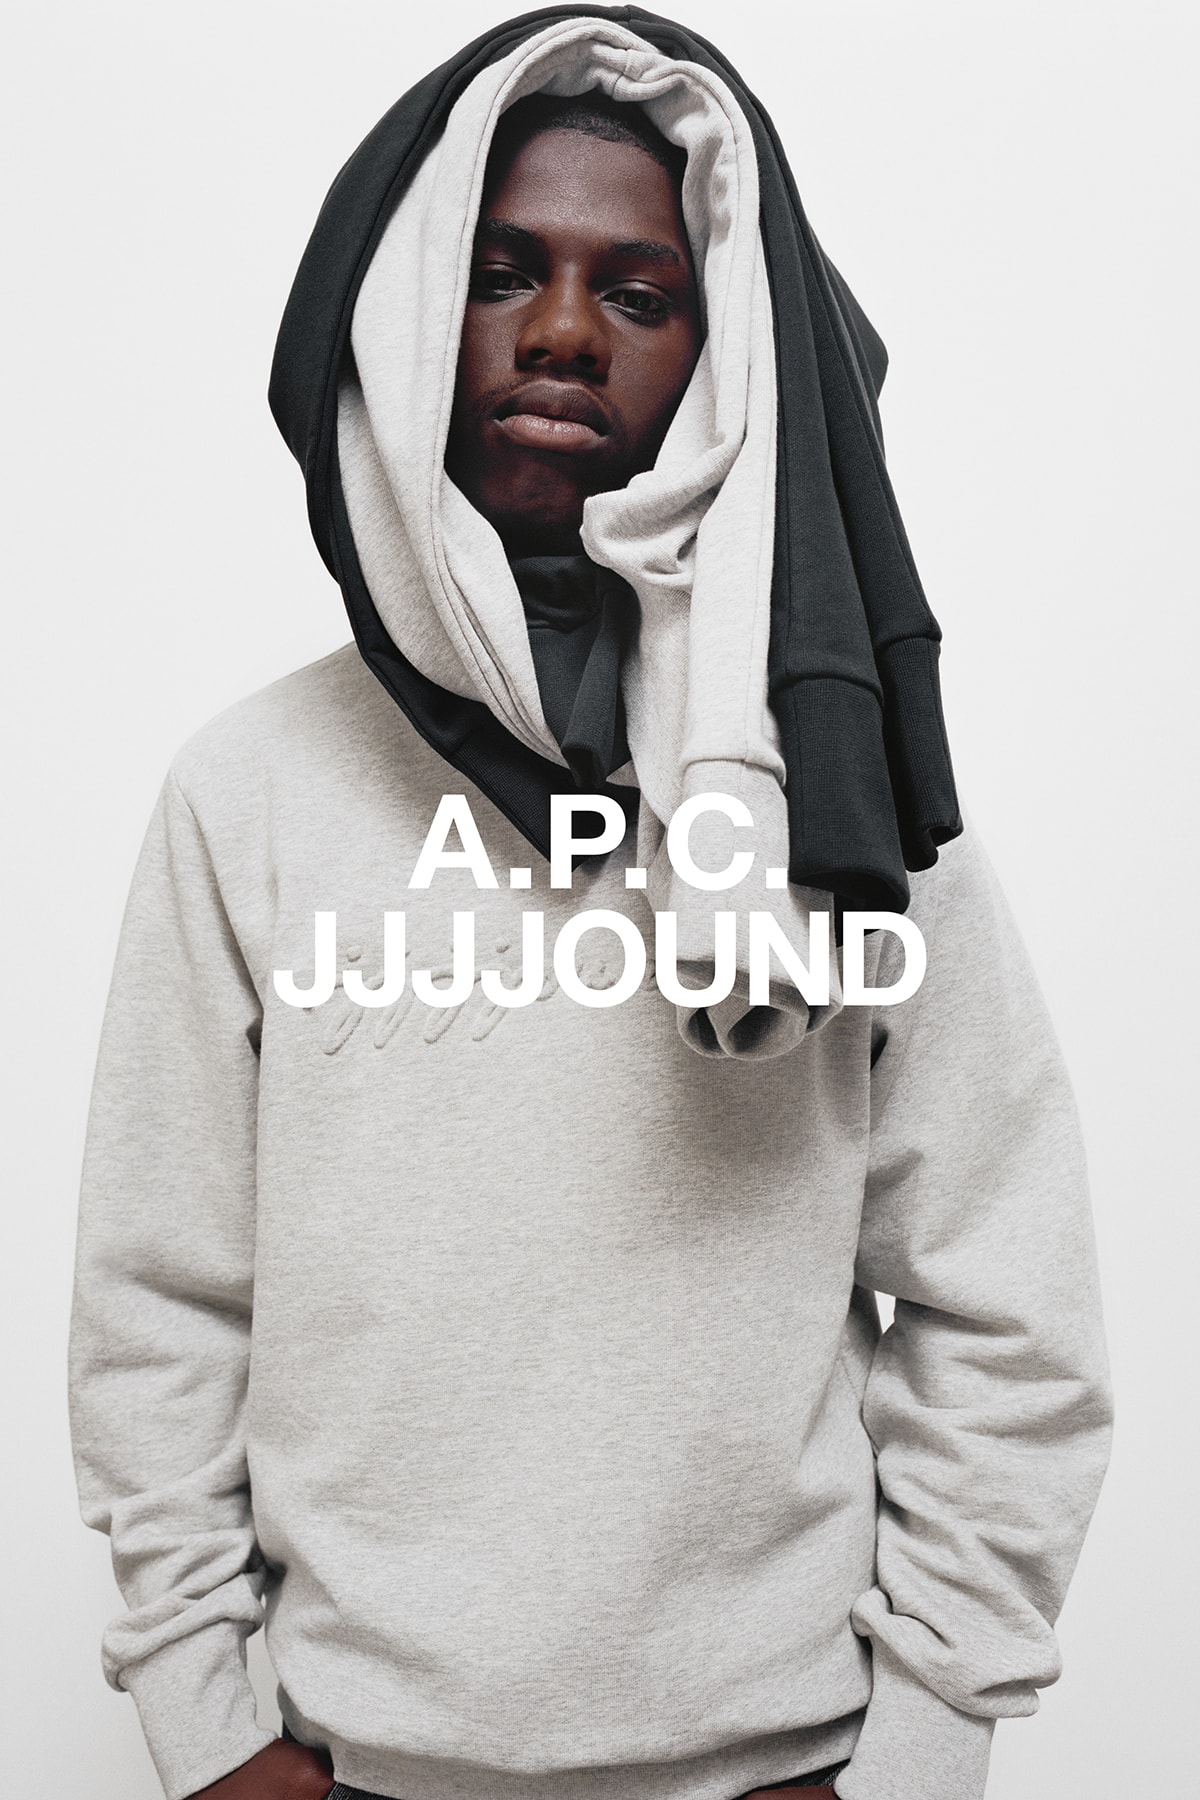 JJJJound x A.P.C. Collection Lookbook Justin Sweatshirt Pale Heather Grey